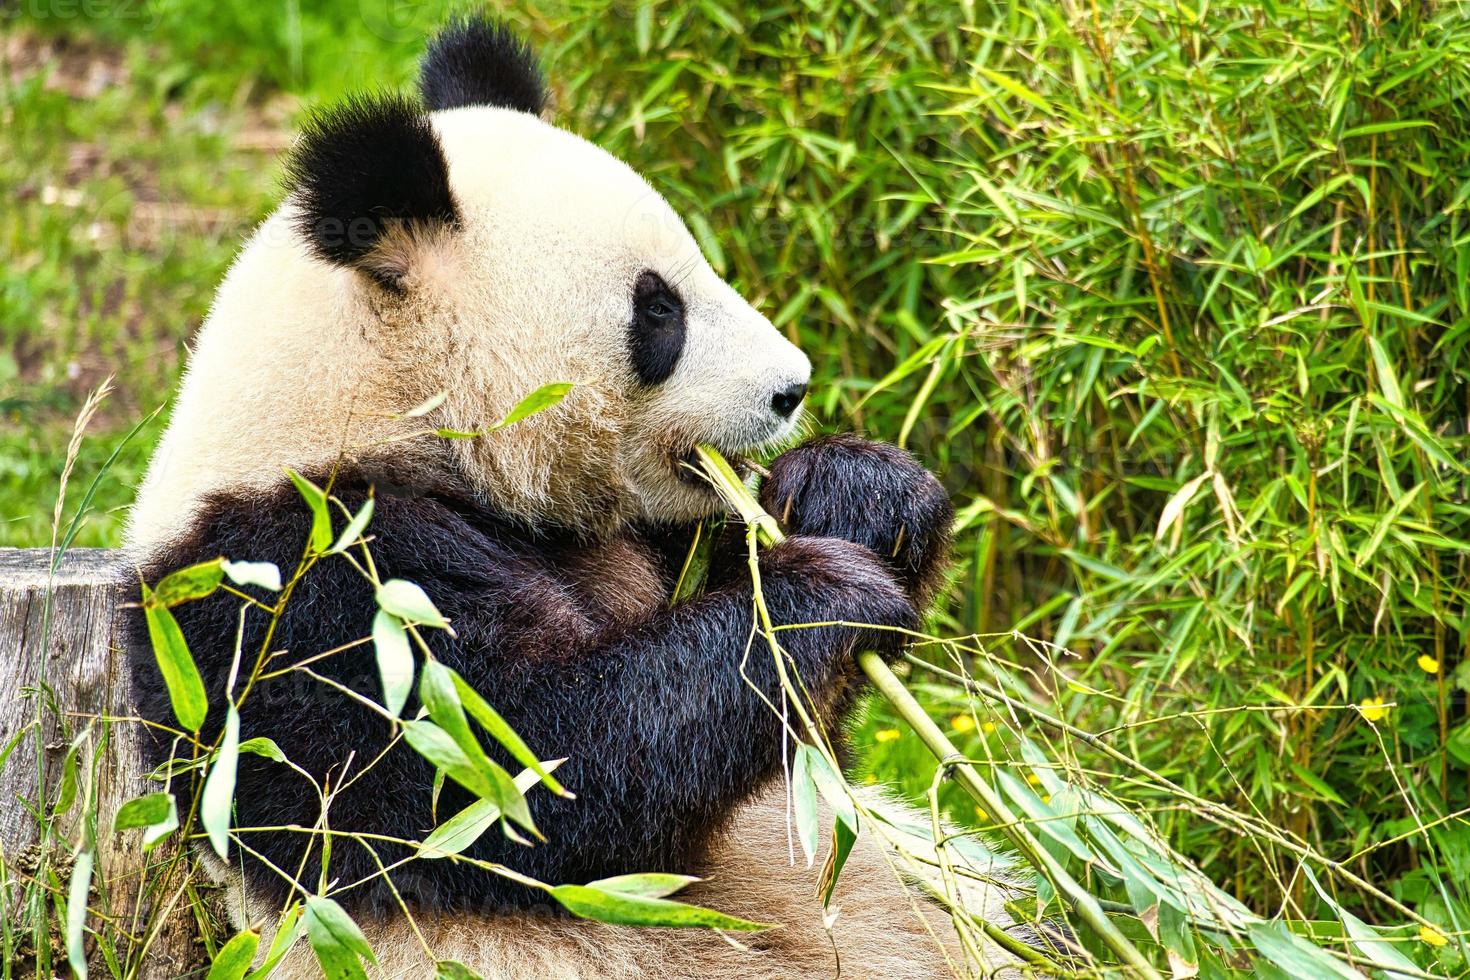 grande panda sentado comendo bambu. espécies em perigo. mamífero preto e branco foto